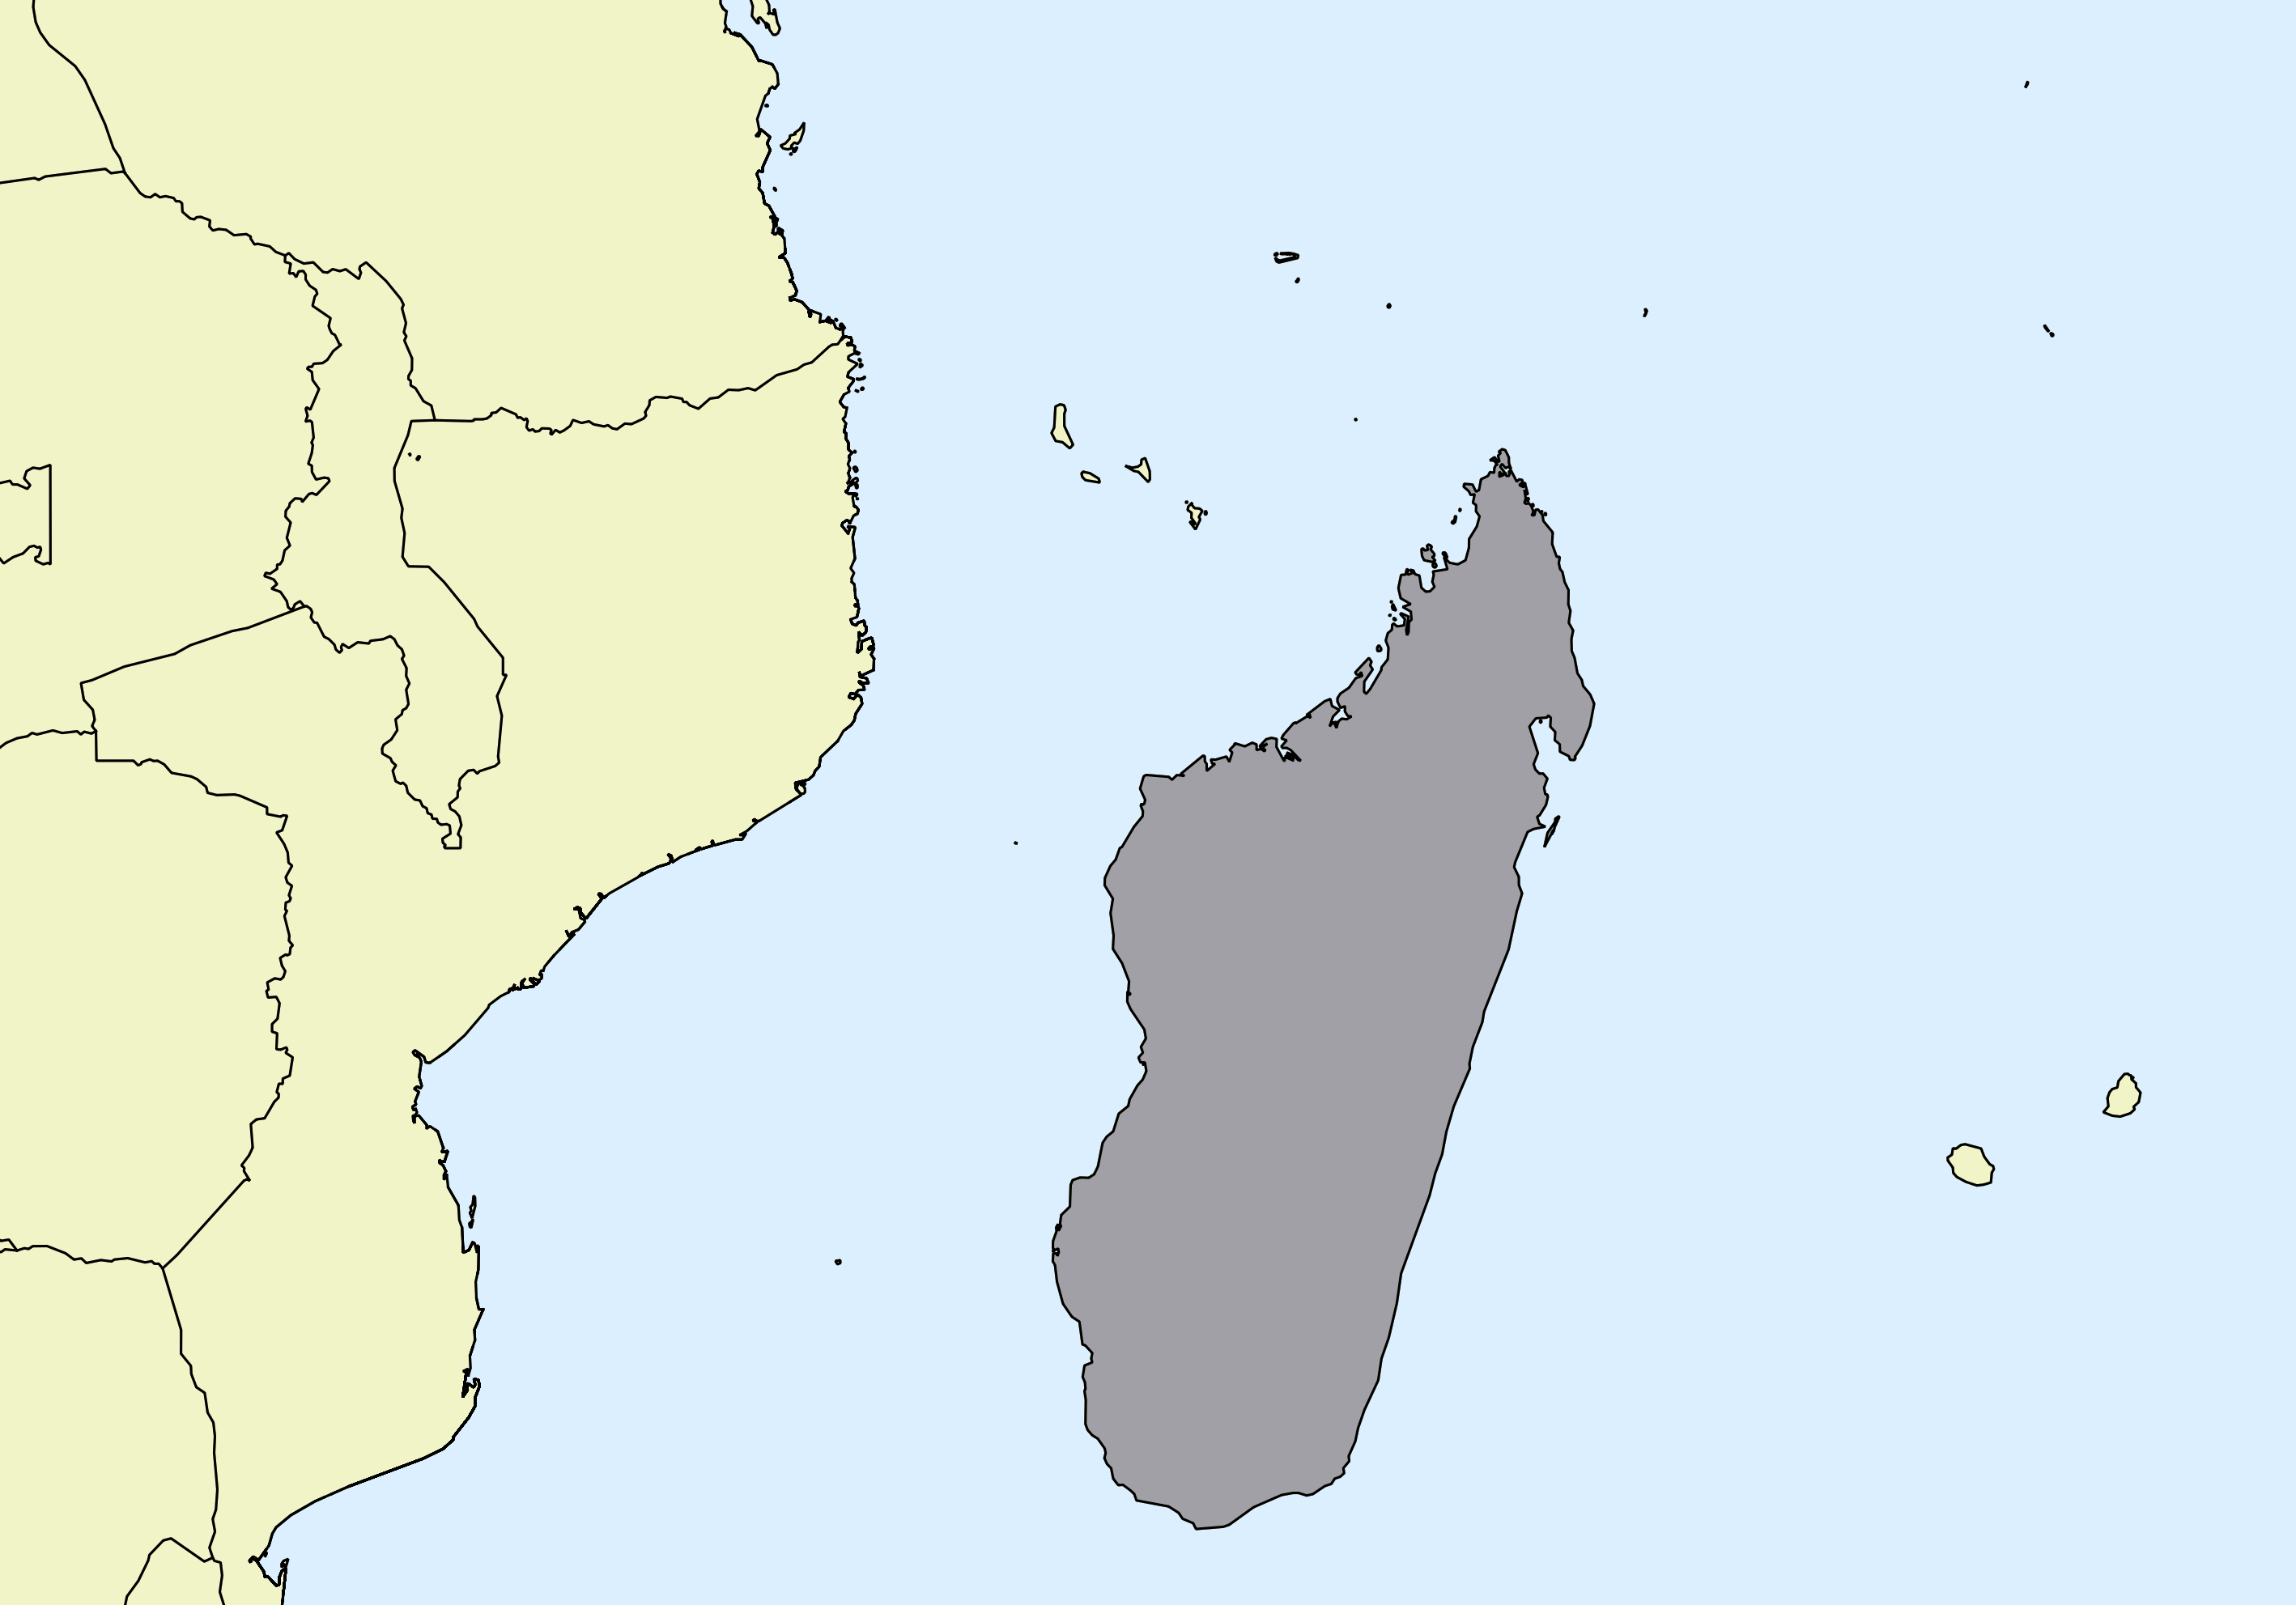 Ausschnitt einer Karte des afrikanischen Kontinents mit Ländergrenzen. Im Zentrum steht Madagaskar grau hervorgehoben